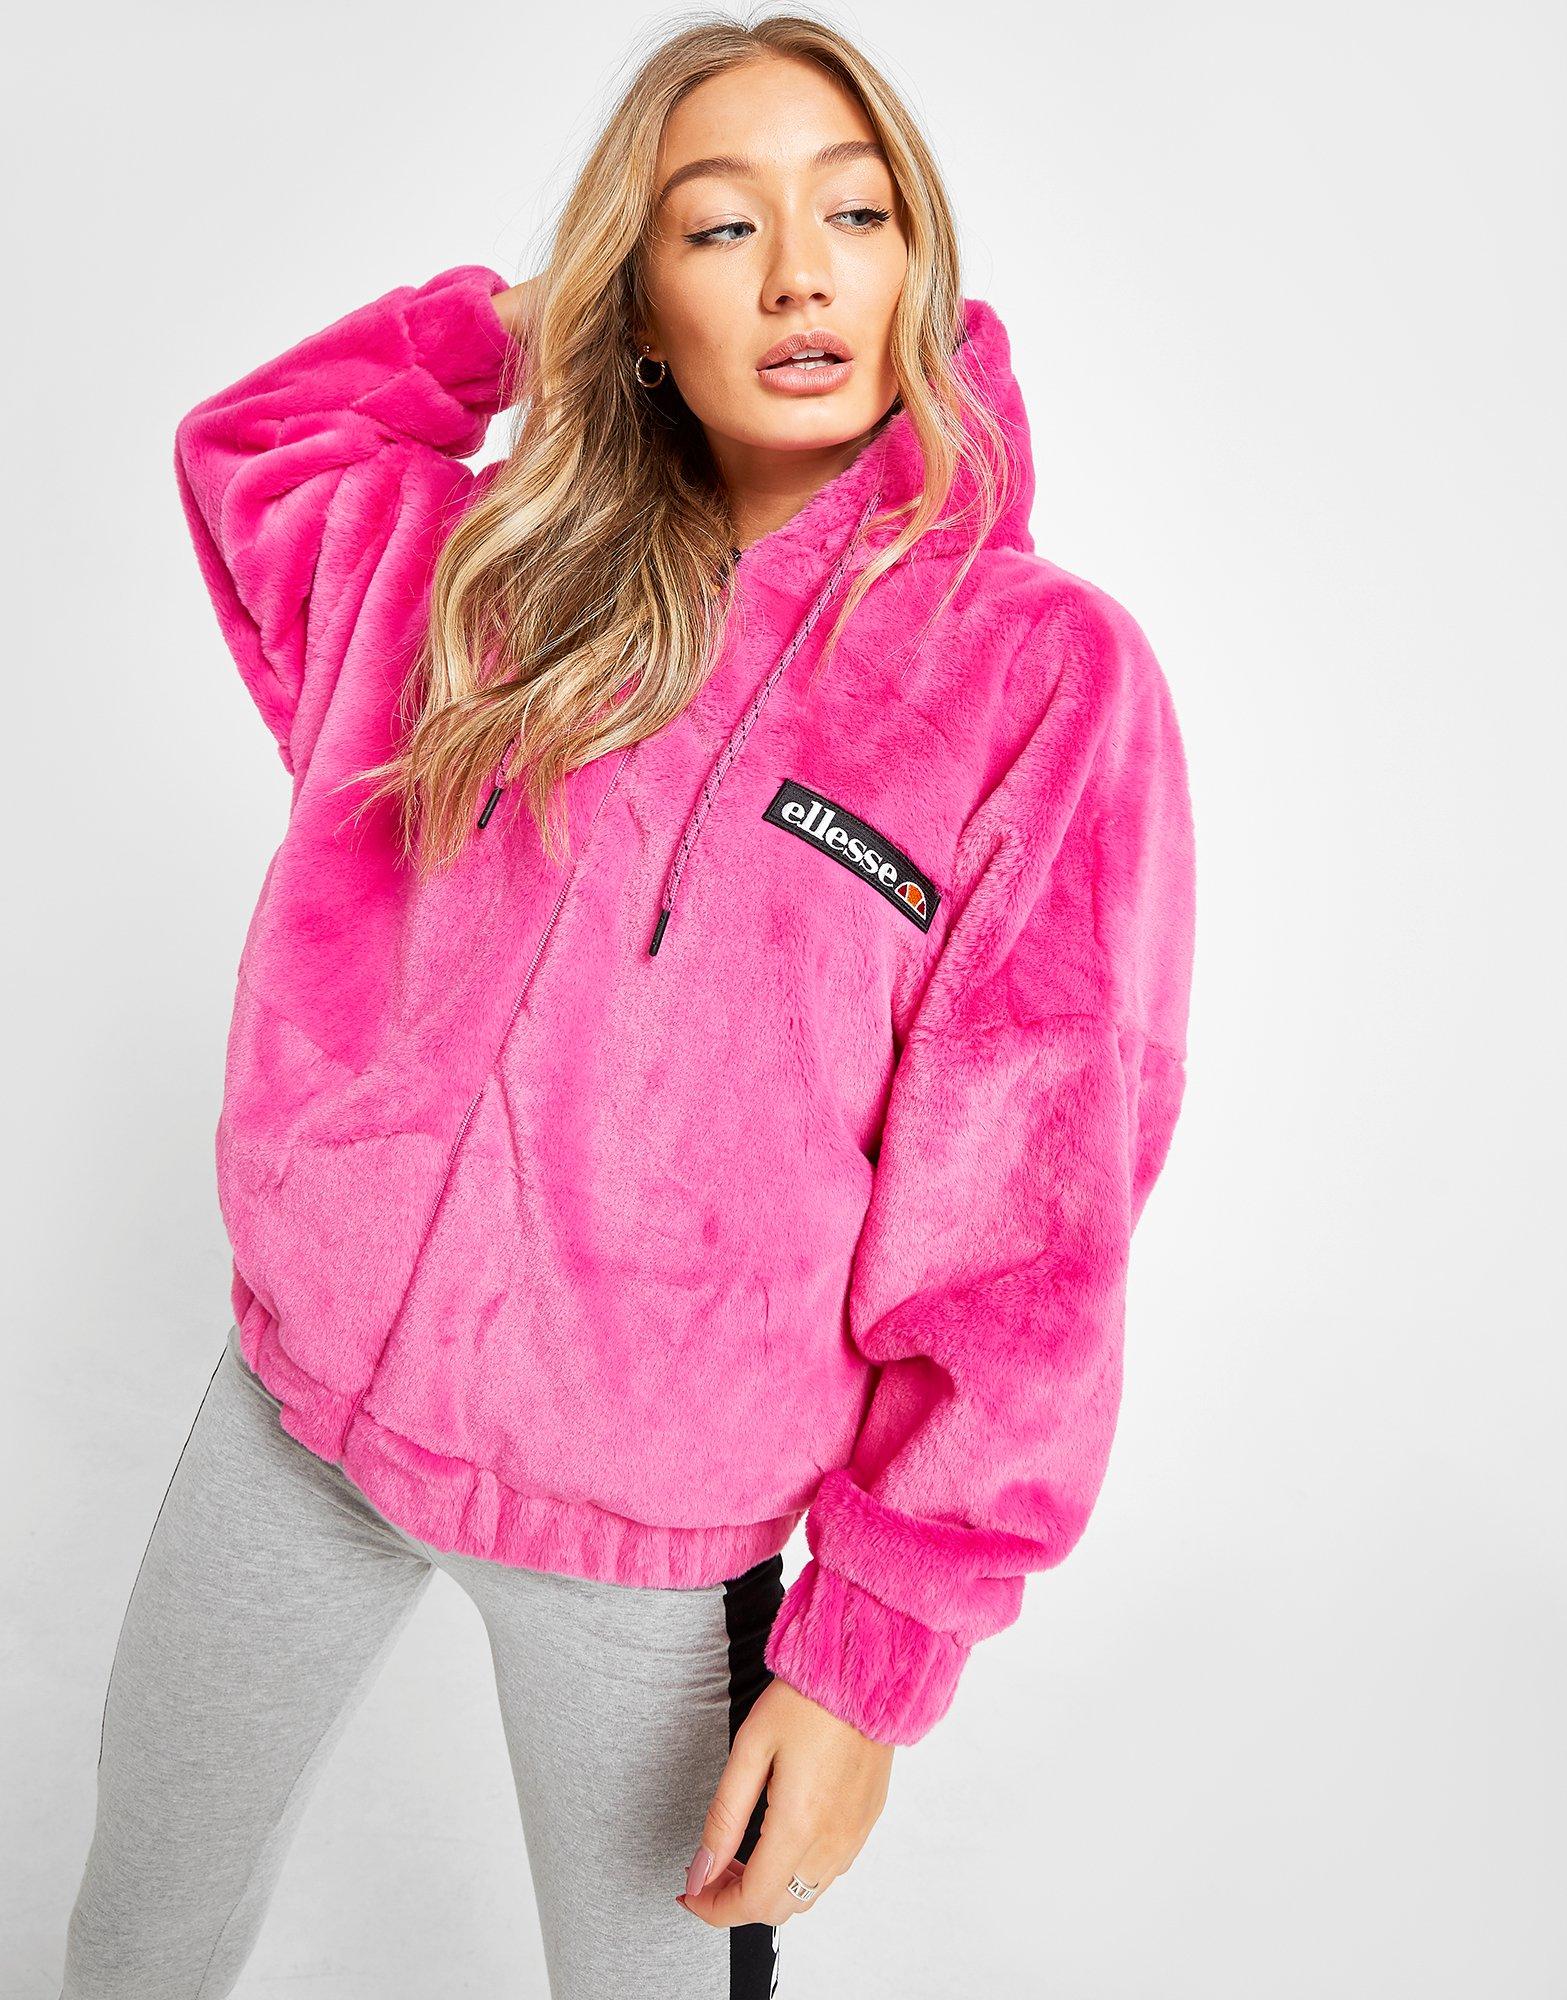 pink ellesse hoodie